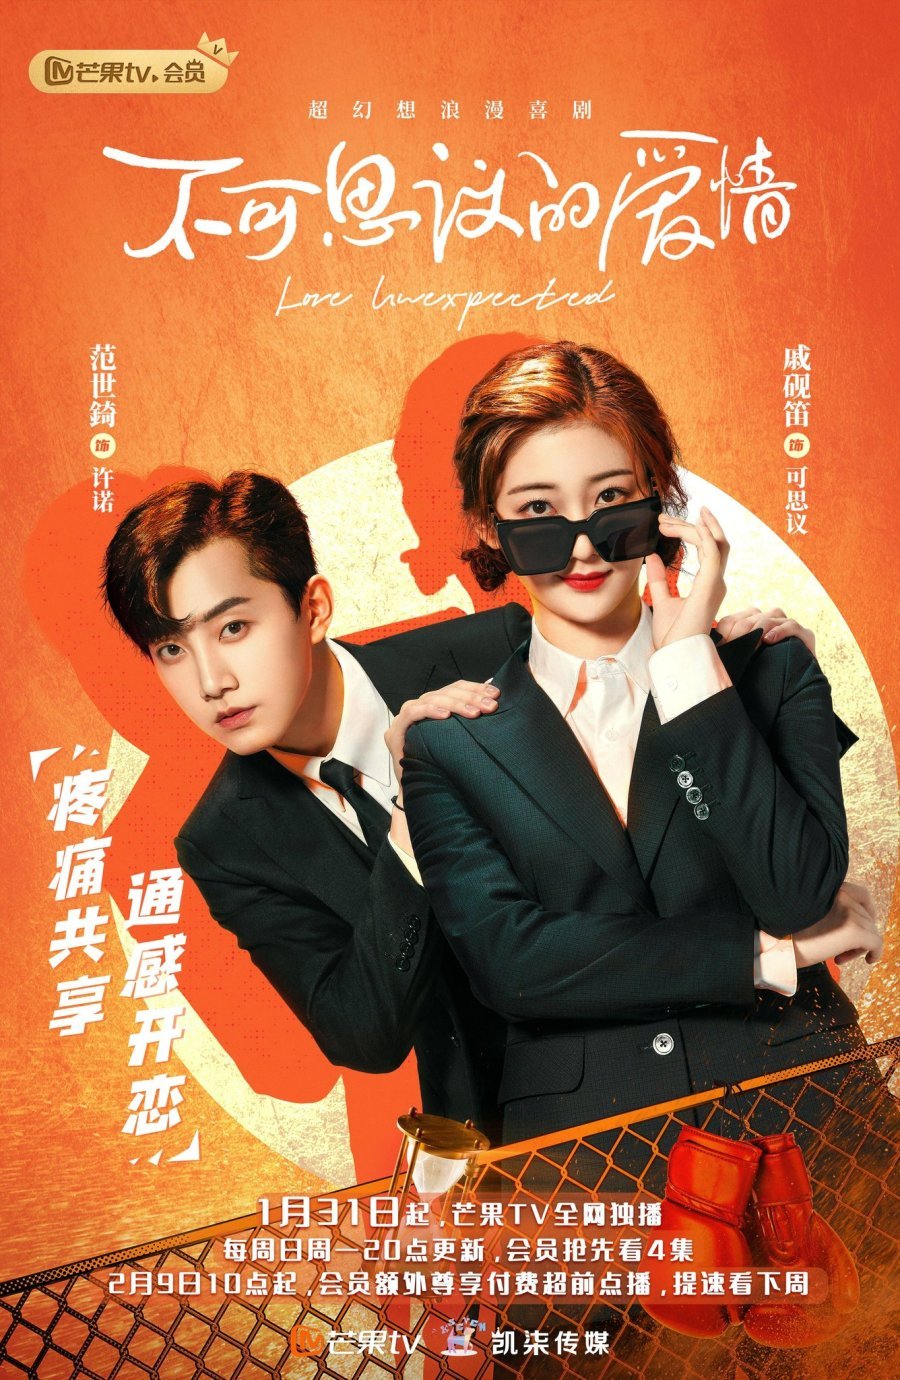 ดูหนังออนไลน์ฟรี ซีรี่ย์จีน Love Unexpected (2021) เมื่อรักมาทักทาย ซับไทย (จบ)